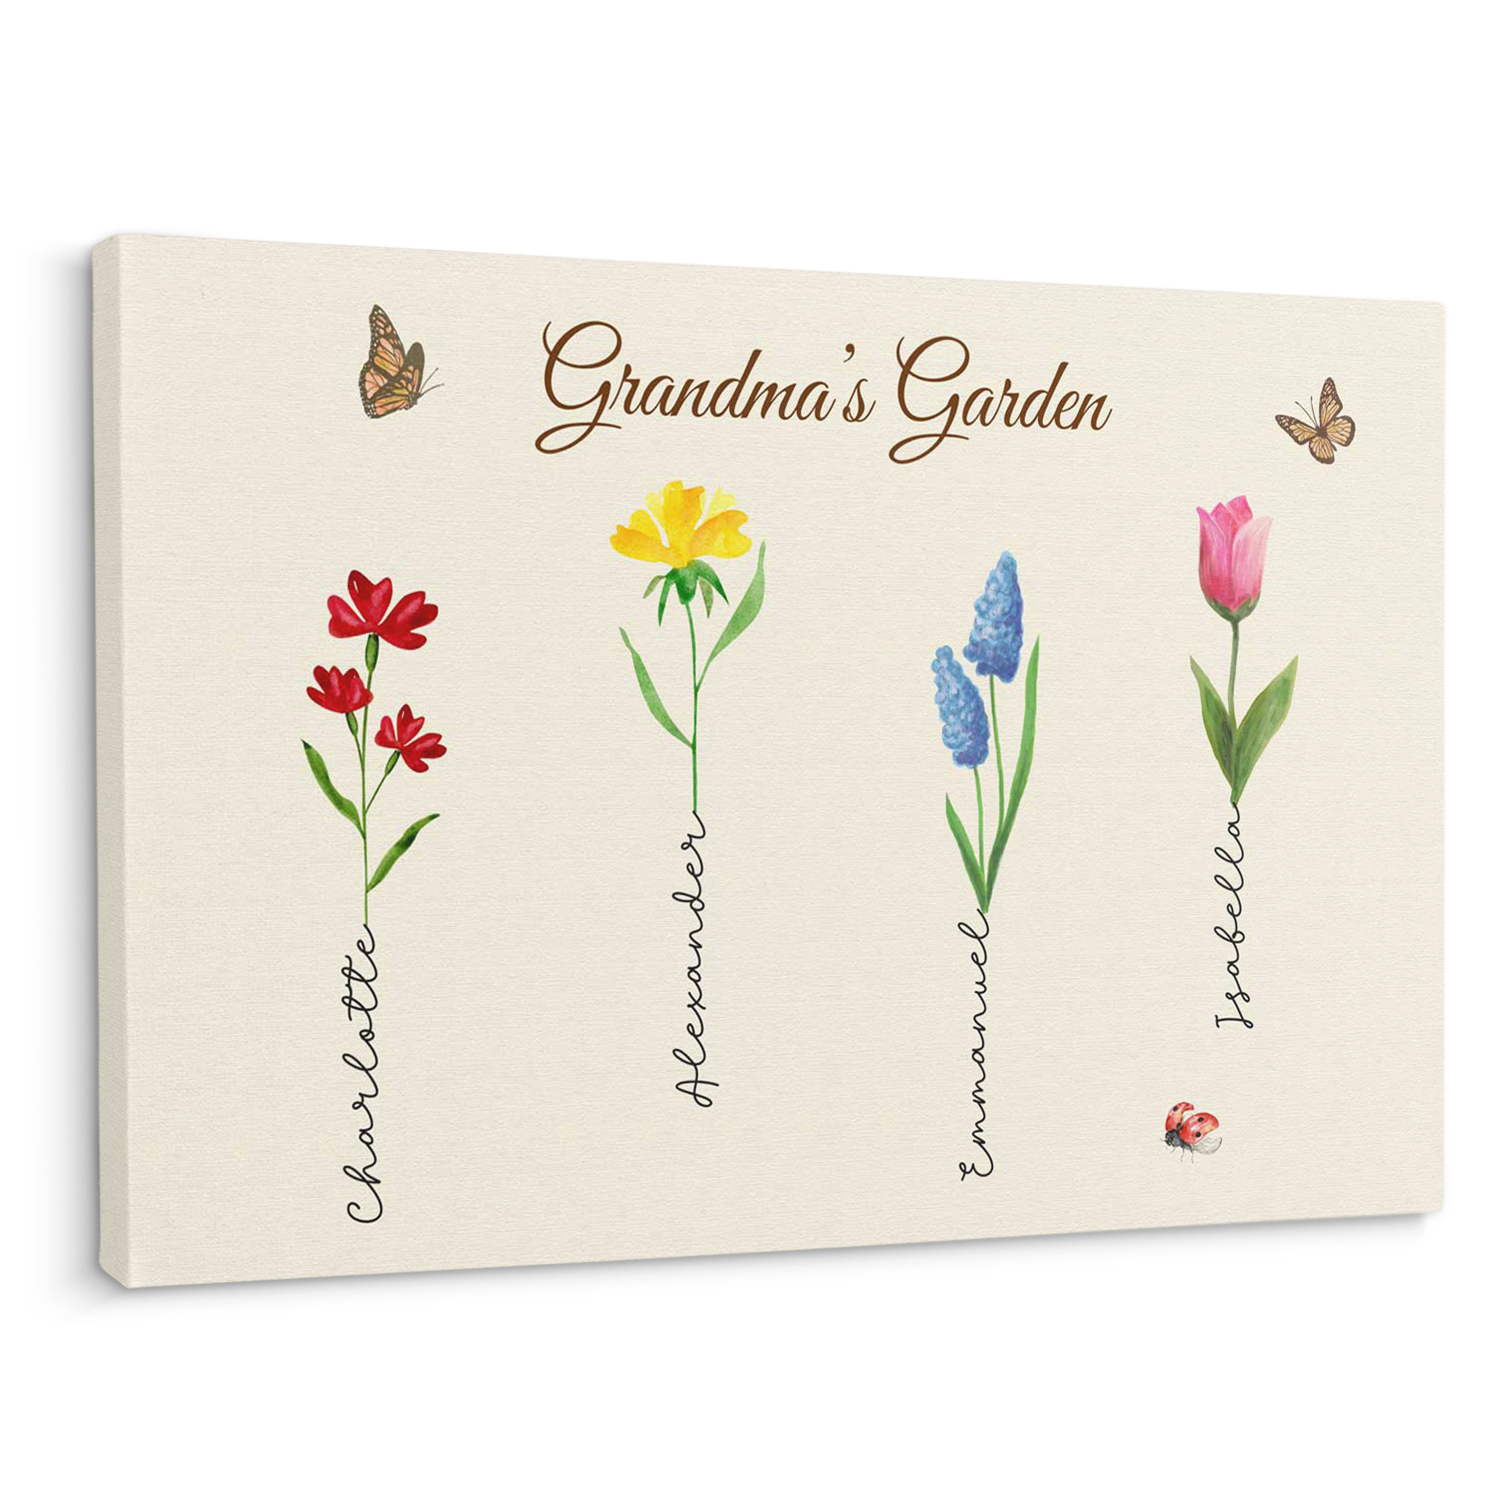 Grandma’s Garden Custom Kids Name Canvas Prints